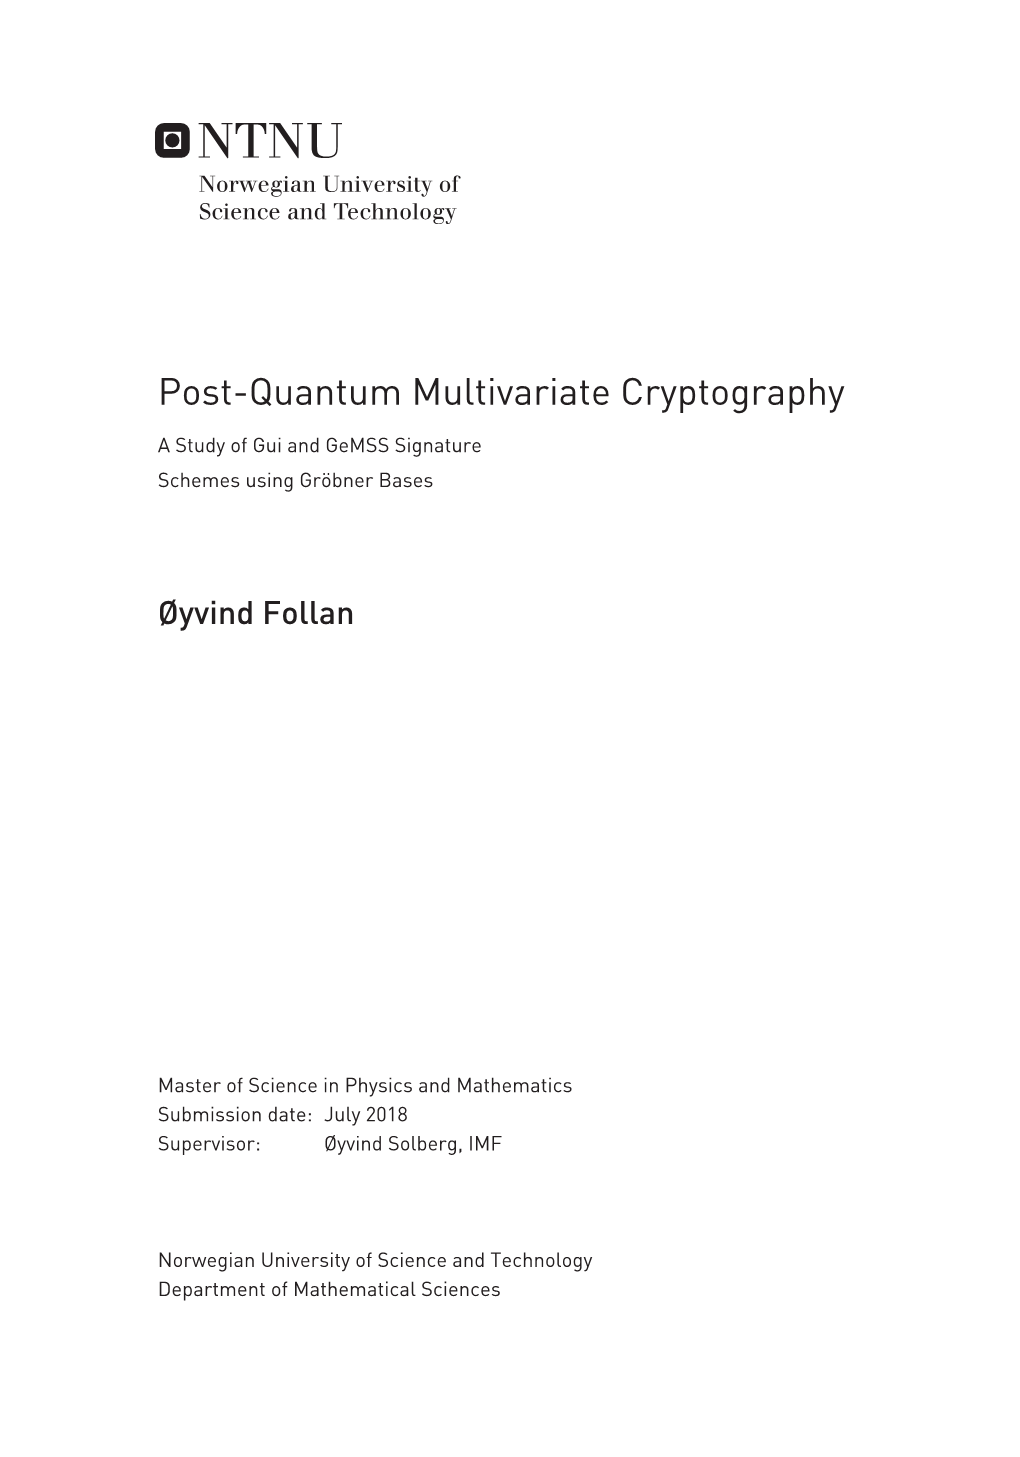 Post-Quantum Multivariate Cryptography